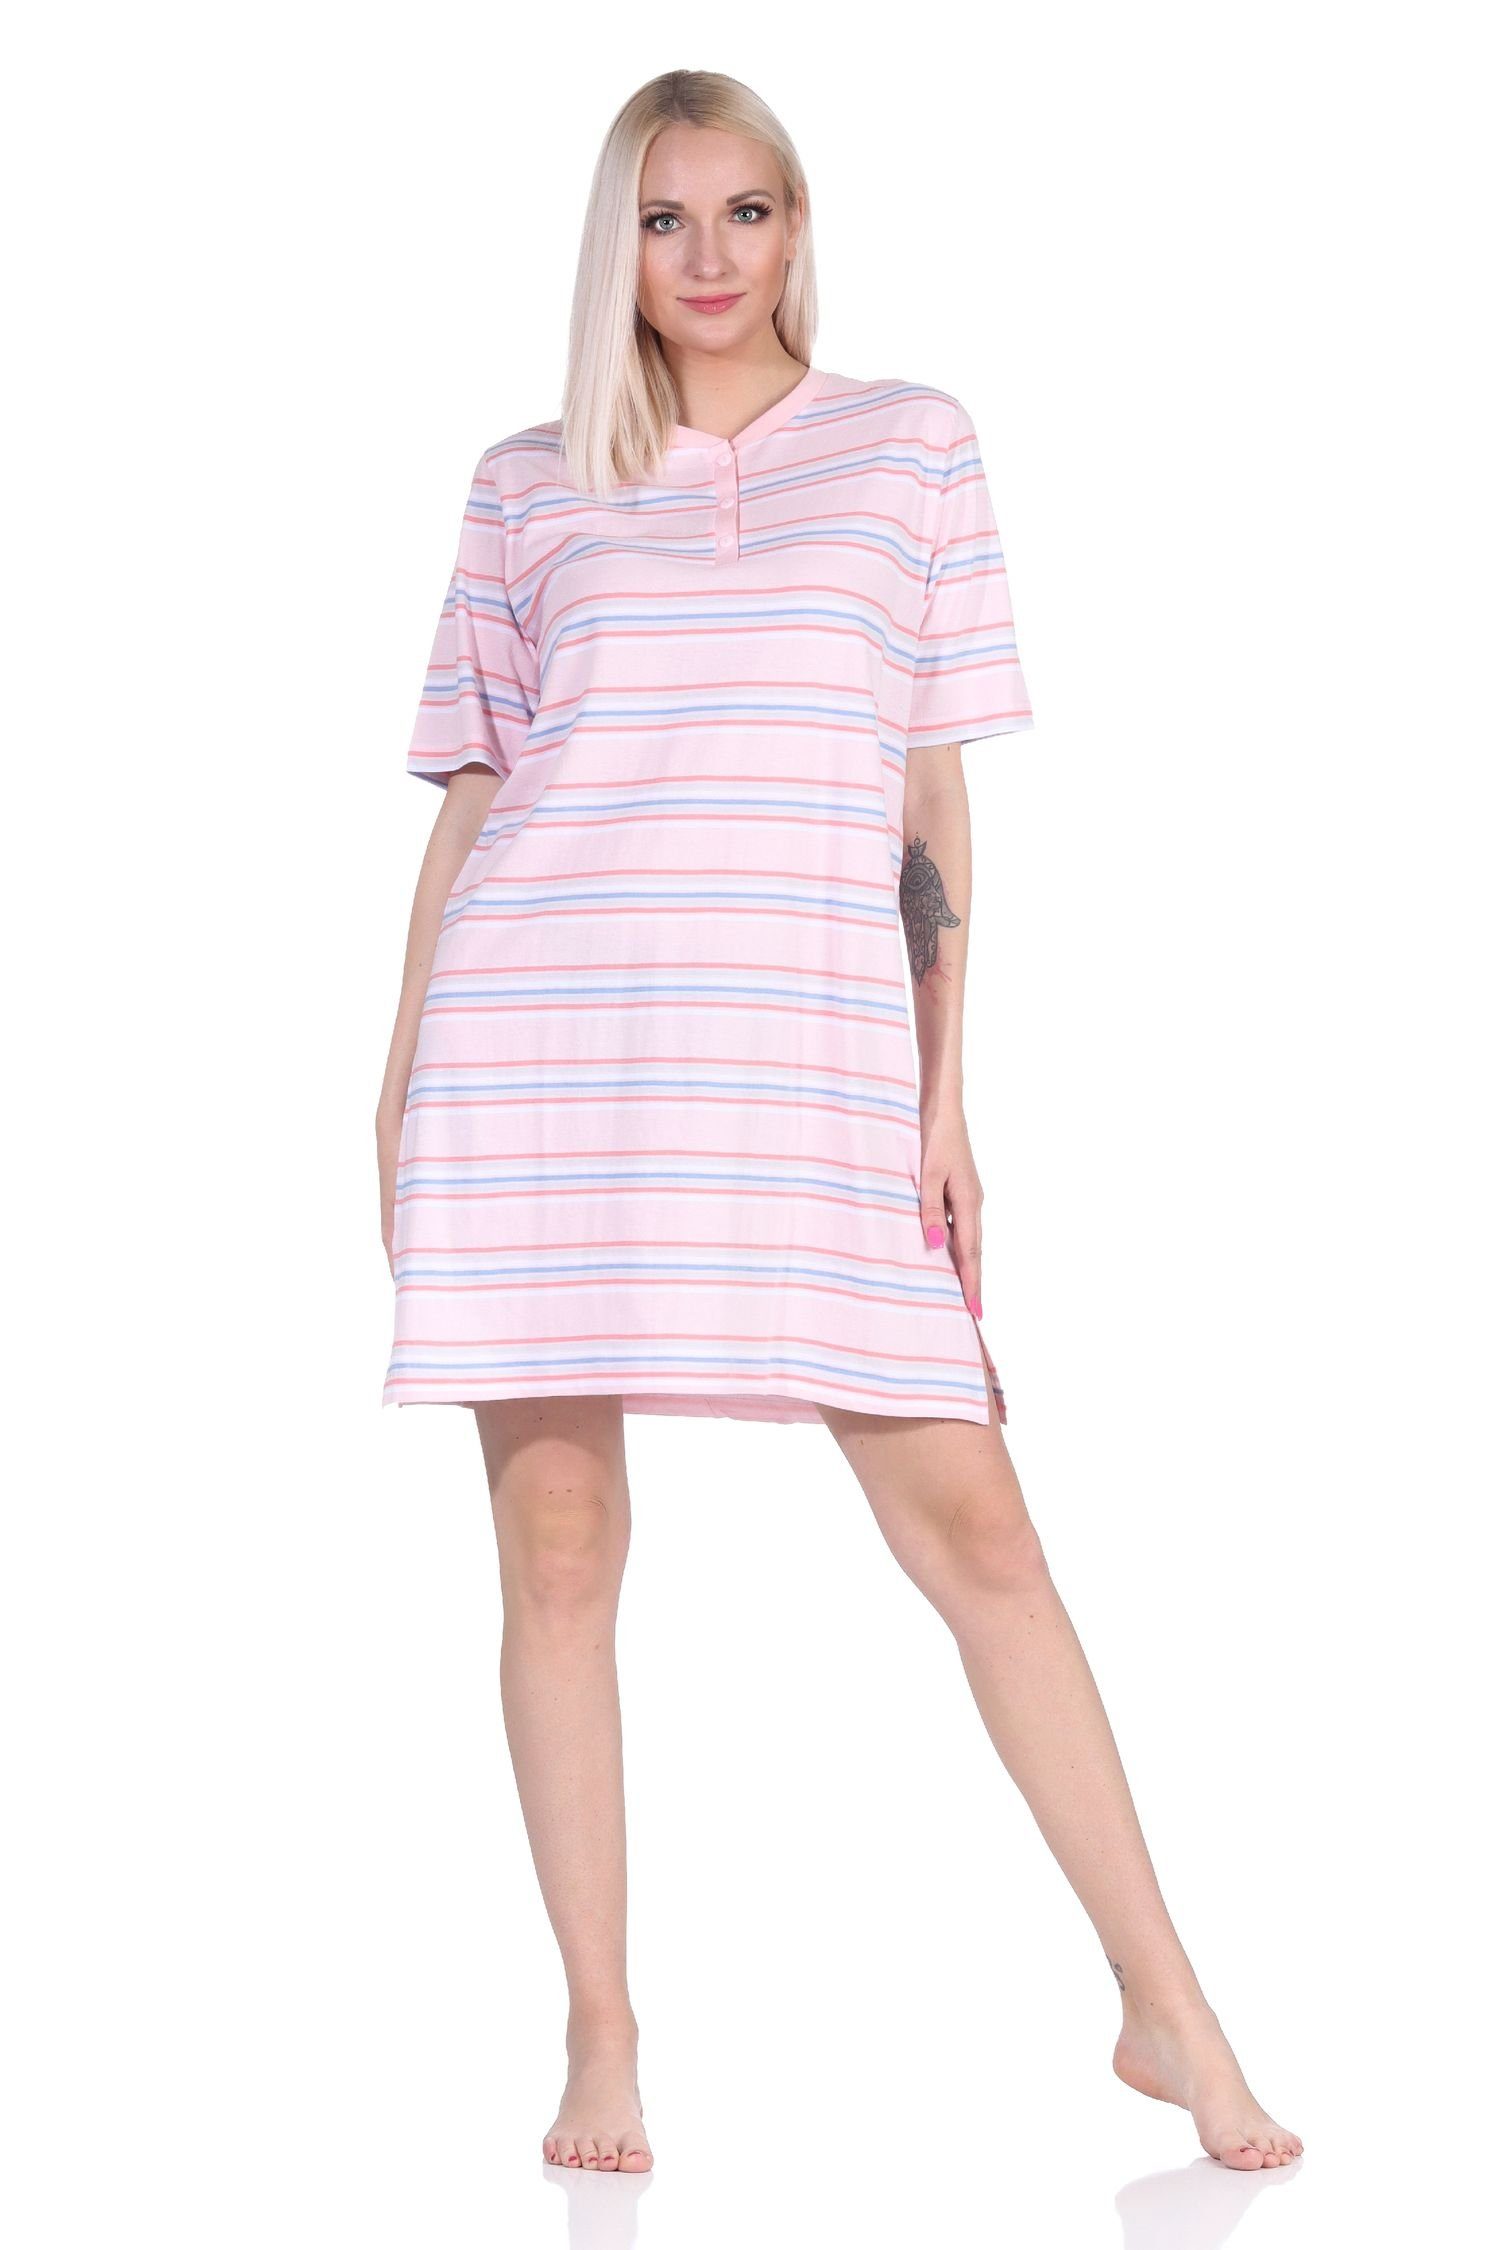 Normann Nachthemd »Damen kurzarm Nachthemd in pastellfarbenen Streifen - 122  214 90 863« online kaufen | OTTO